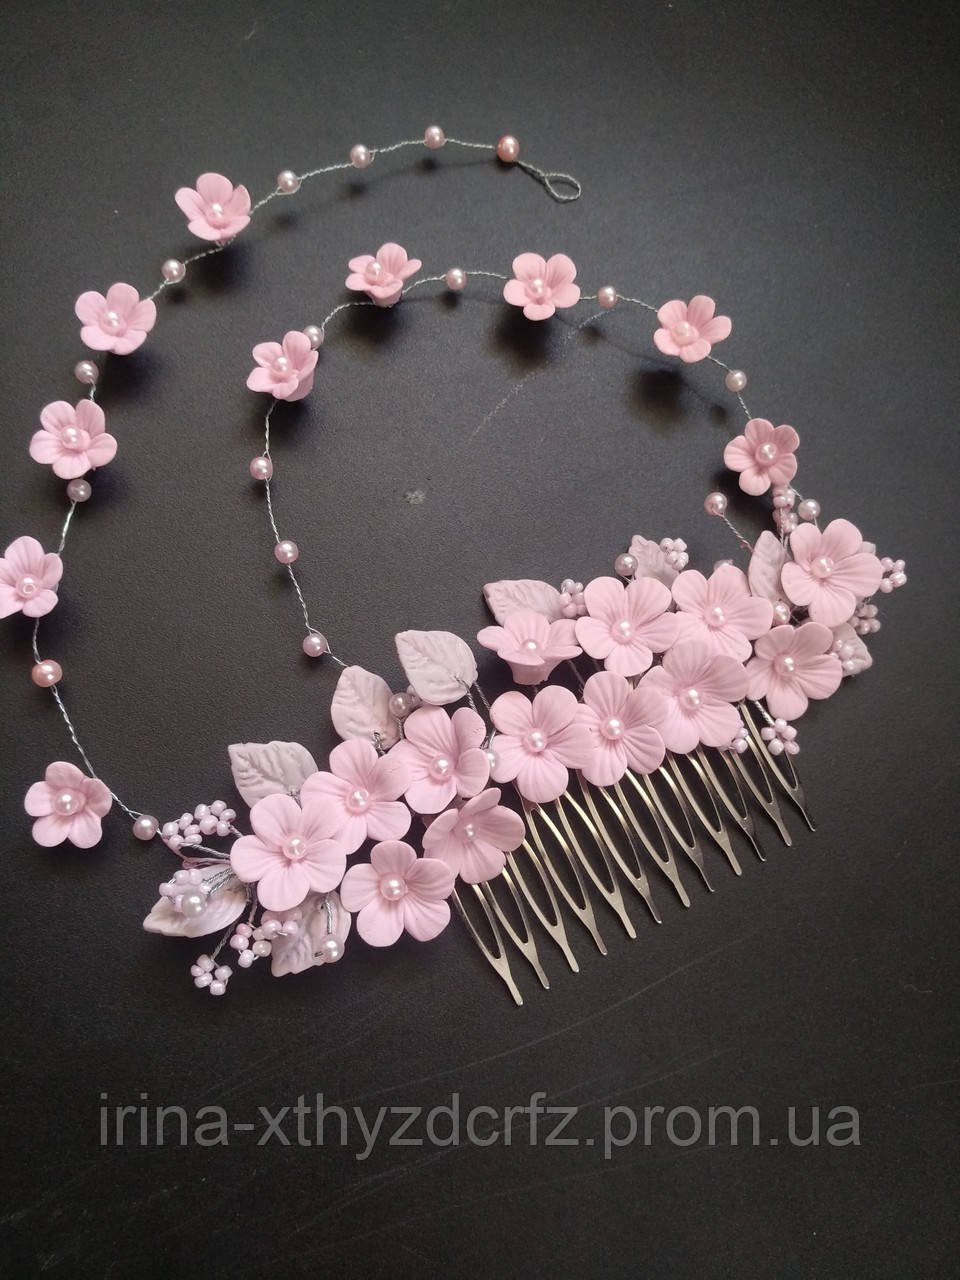 Весільний гребінь з маленькими рожевими квітами з полімерної глини та перлами, фото 1